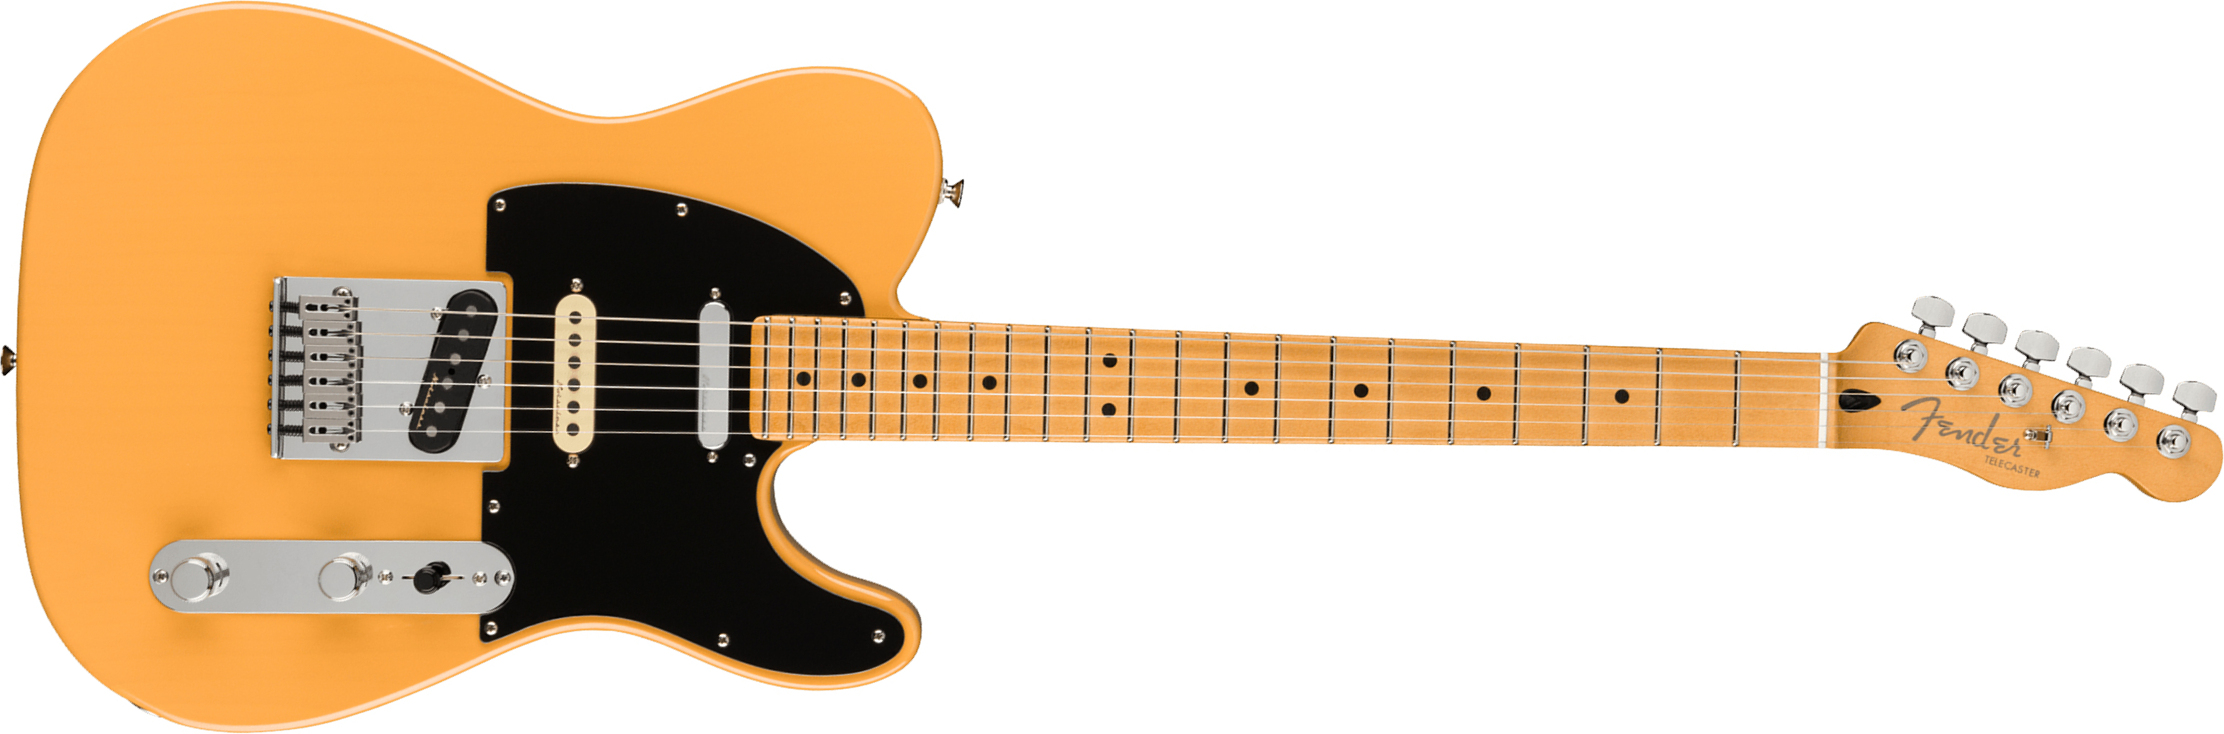 Fender Tele Player Plus Nashville Mex 3s Ht Mn - Butterscotch Blonde - Guitarra eléctrica con forma de tel - Main picture